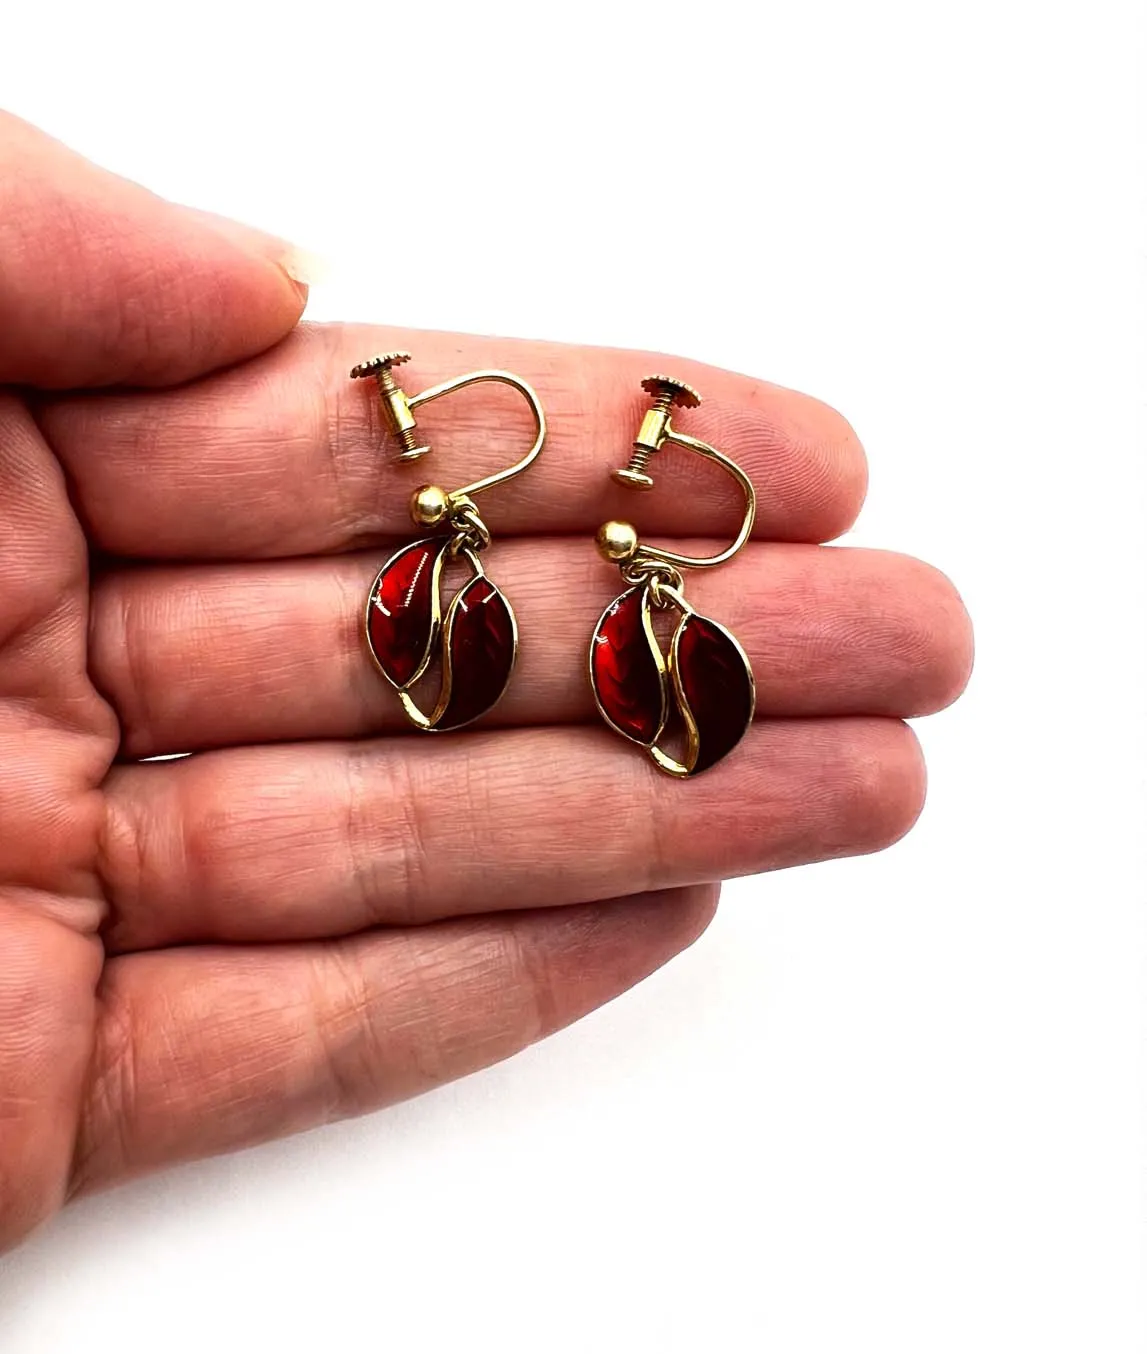 Small red enamel midcentury by David Andersen earrings held in a hand